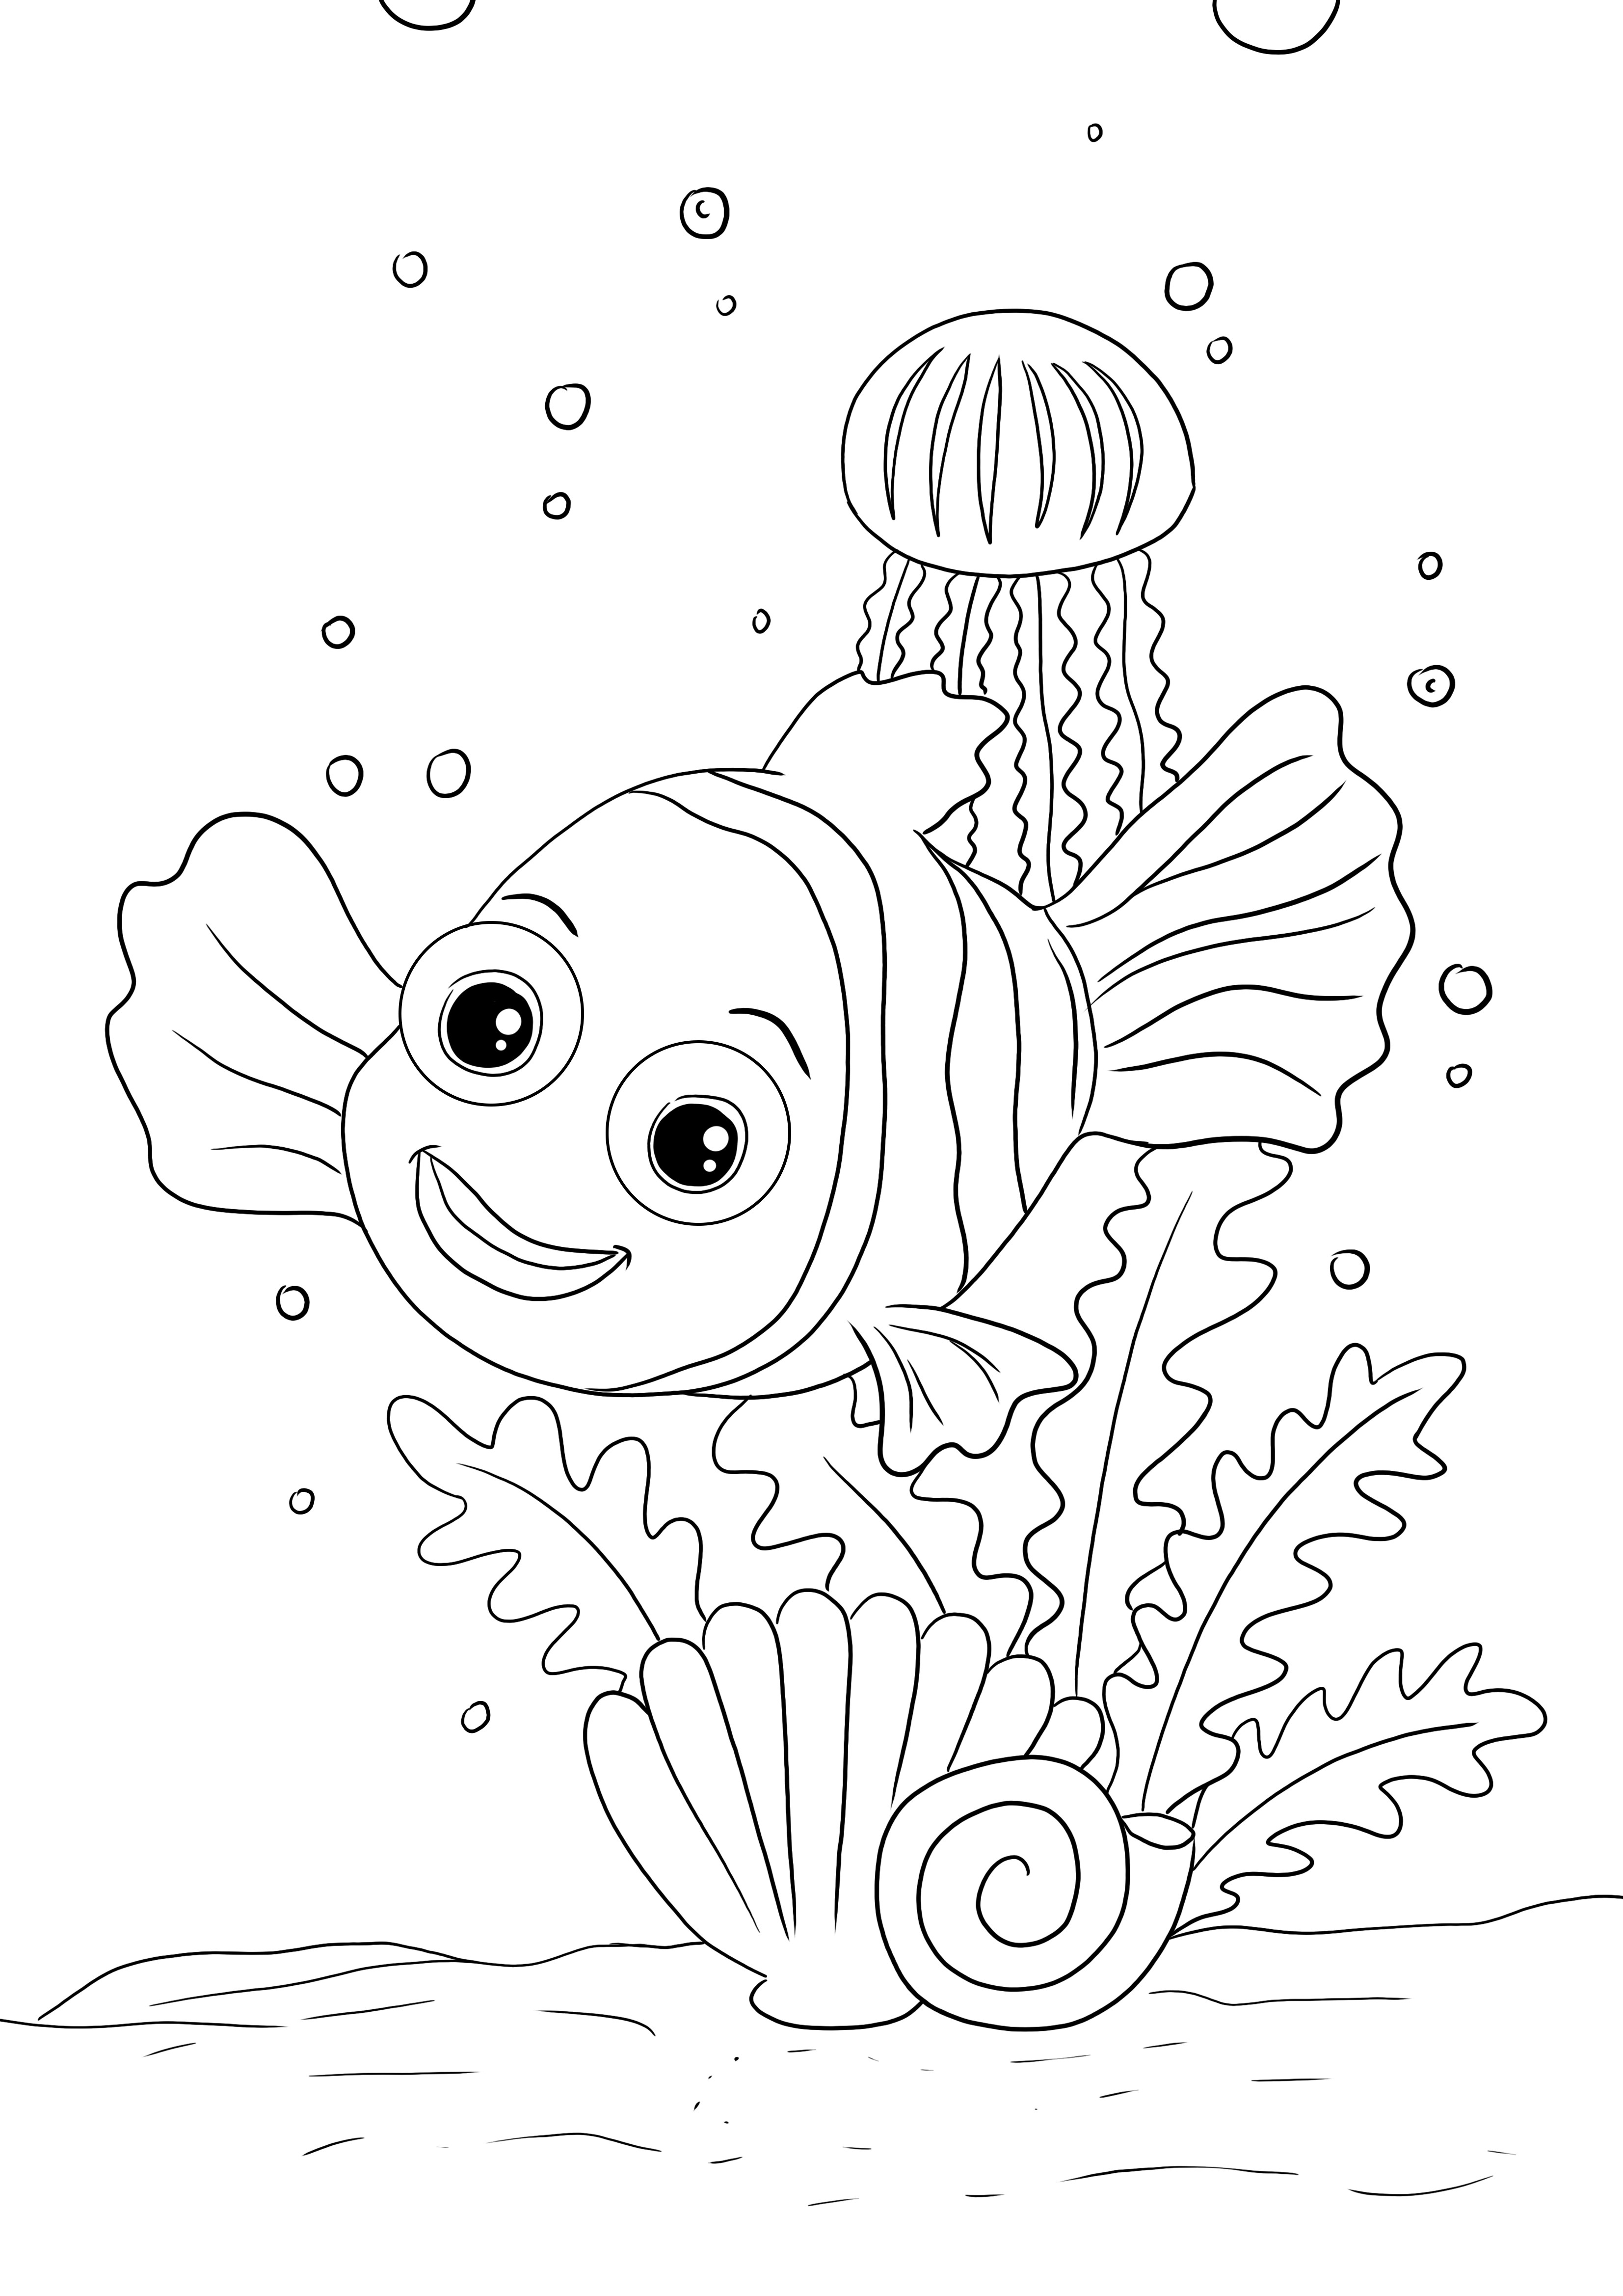 Szczęśliwy Nemo do druku, gotowy do kolorowania i nauki